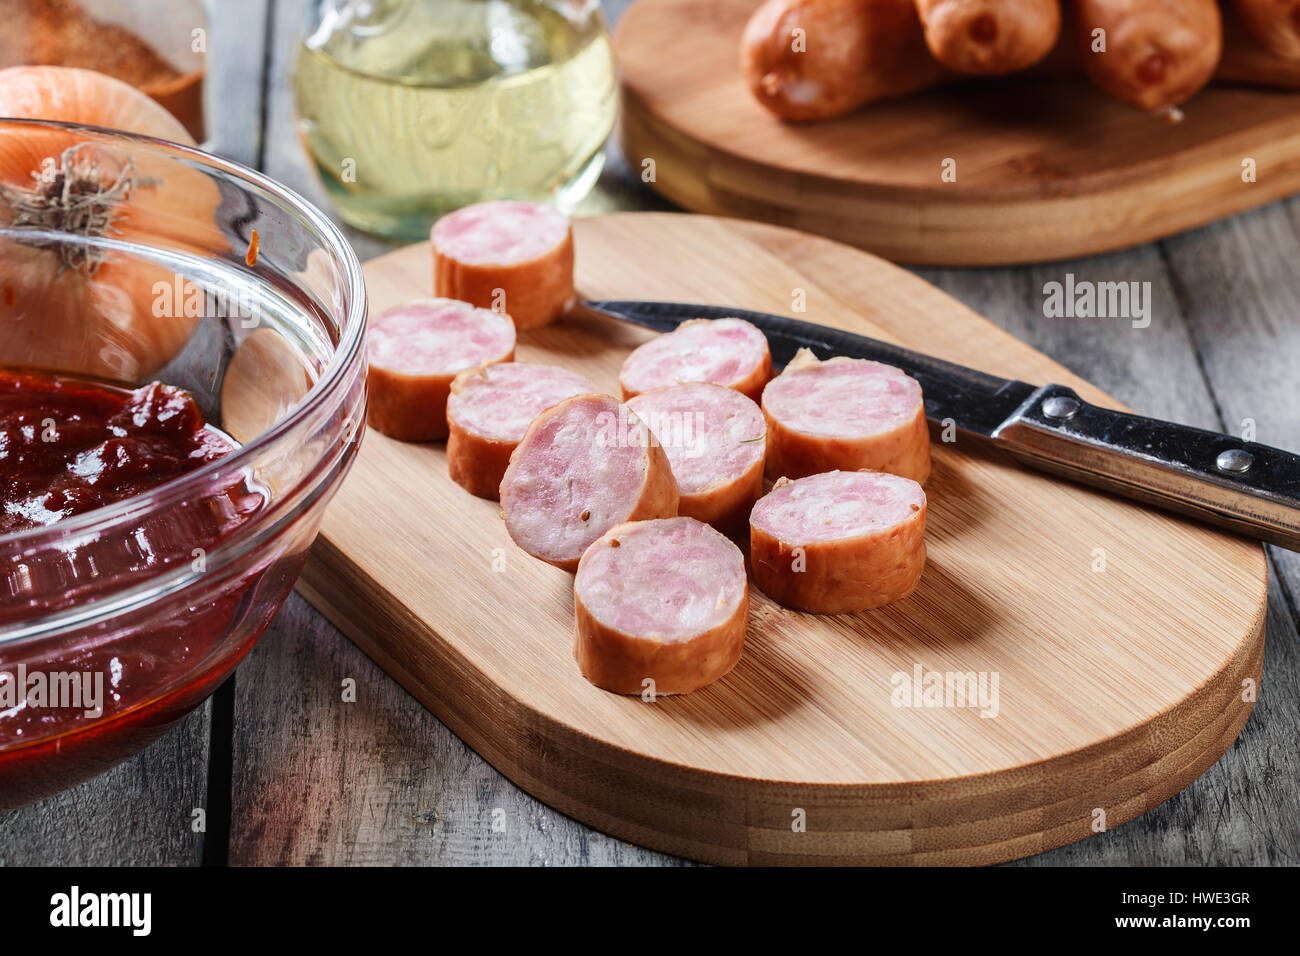 Ingredienti pronti per preparare il tedesco currywurst con salsa al curry. Cucina tedesca. Foto Stock